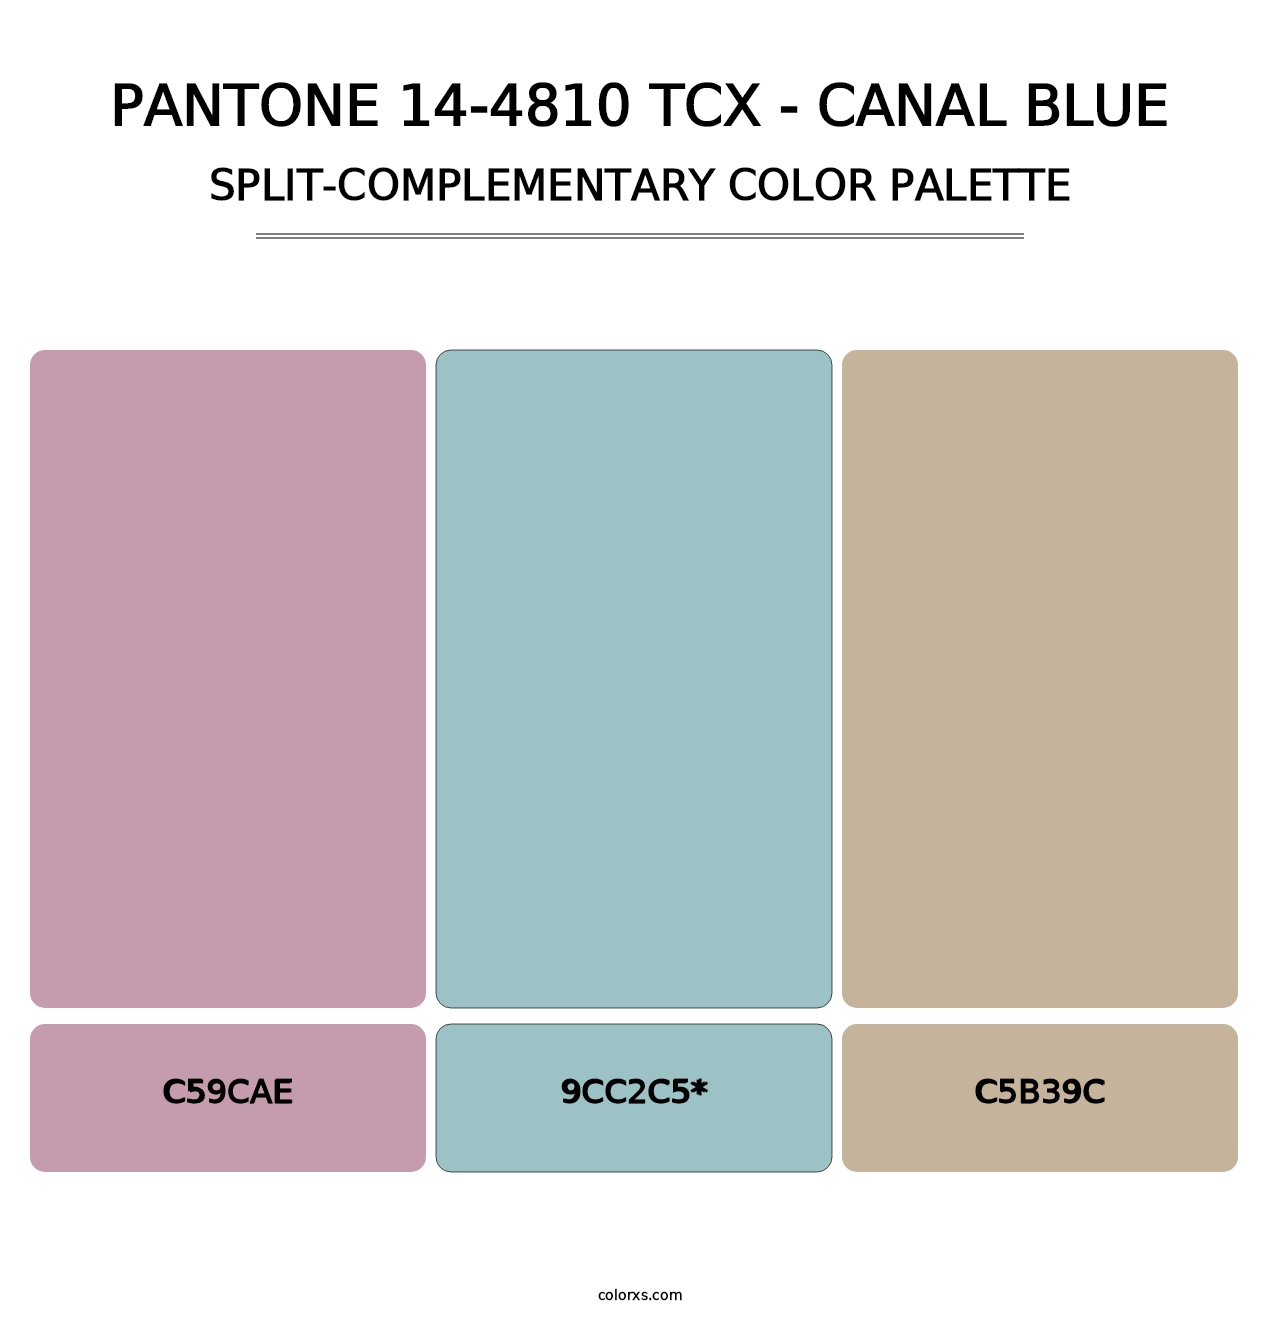 PANTONE 14-4810 TCX - Canal Blue - Split-Complementary Color Palette